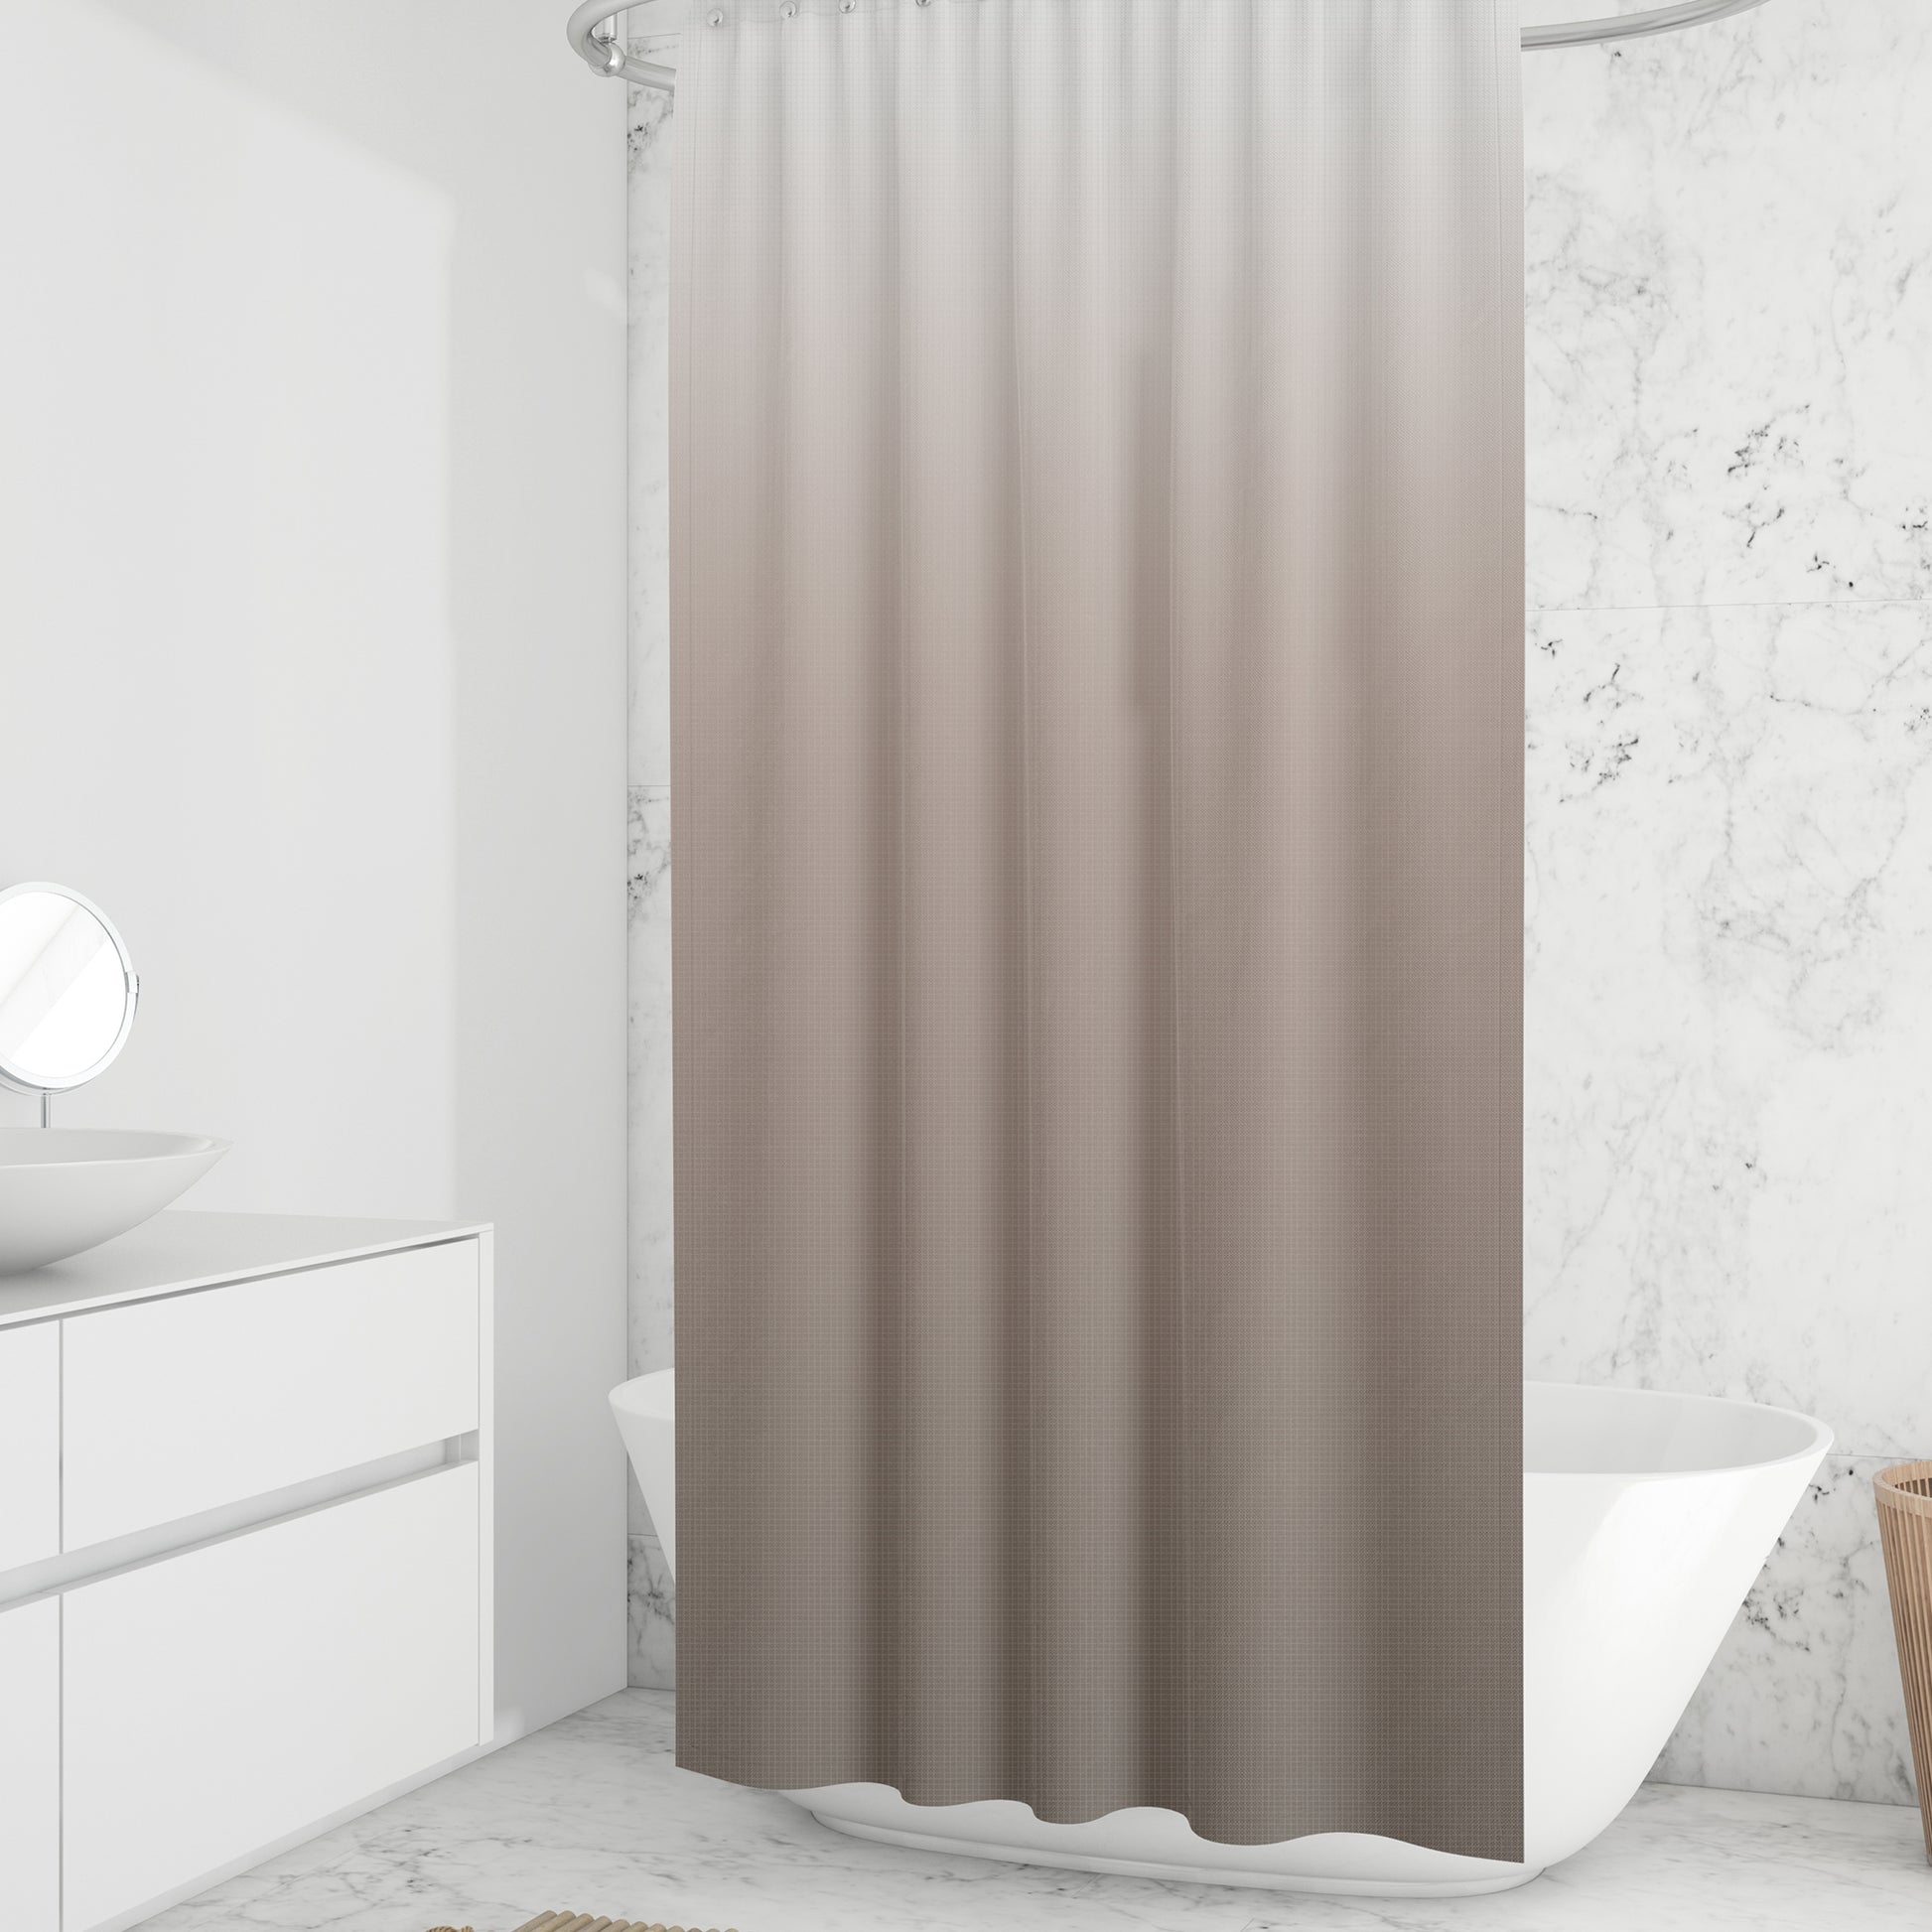 Curtains for bathroom